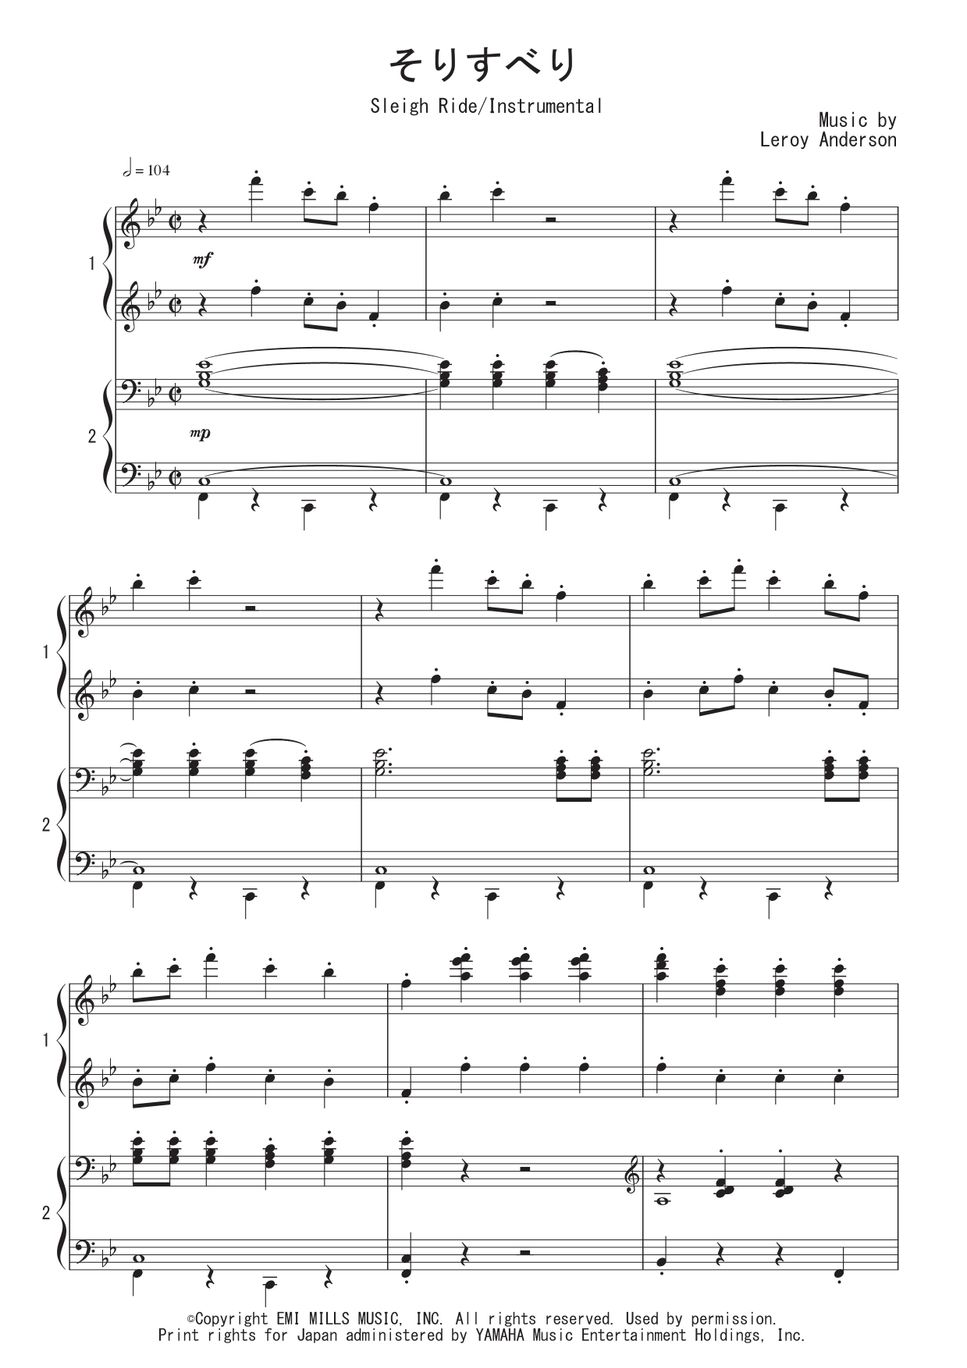 ルロイ・アンダーソン - そりすべり (ピアノ連弾) 楽譜 by Peony